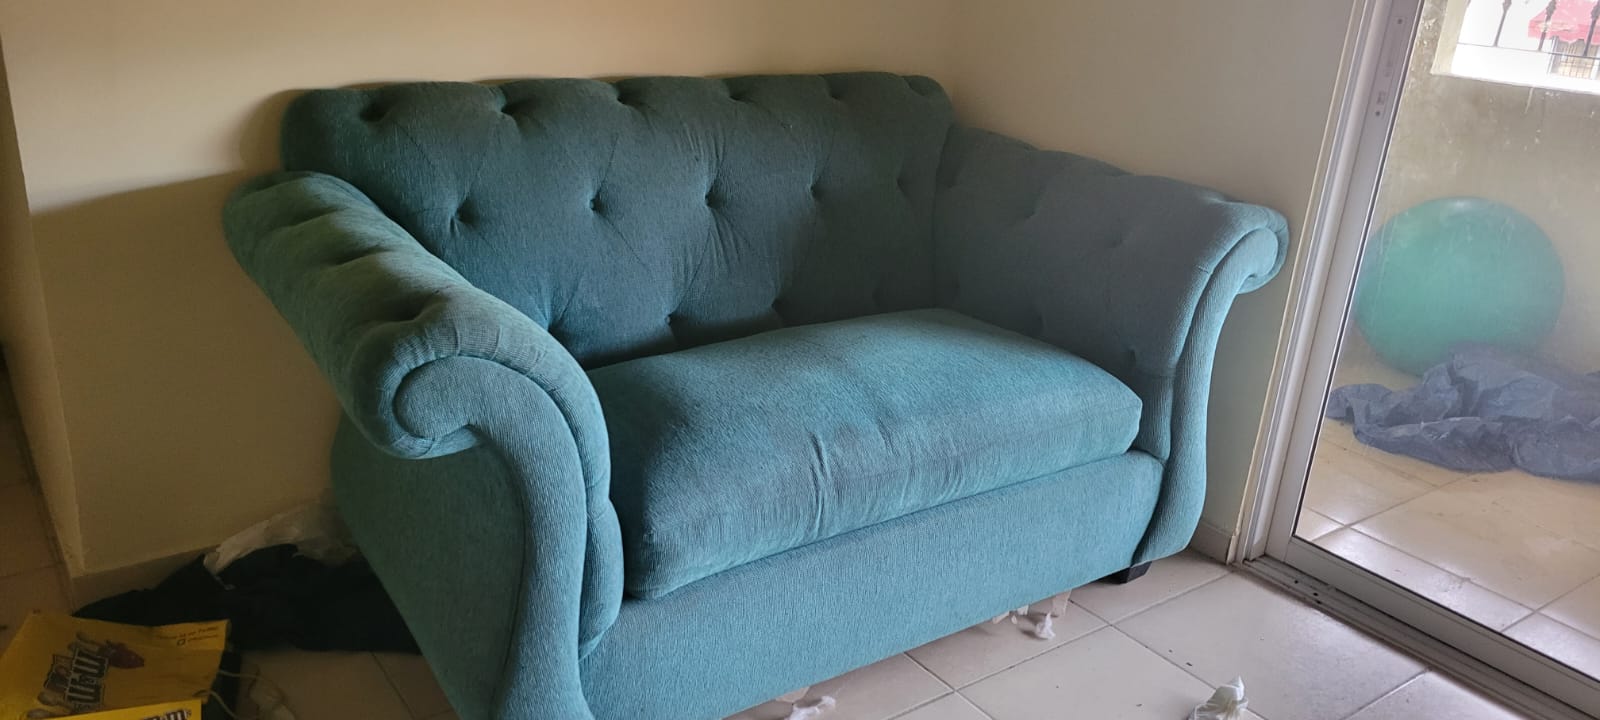 Sofa de dos personas azul Foto 7169898-T4.jpg